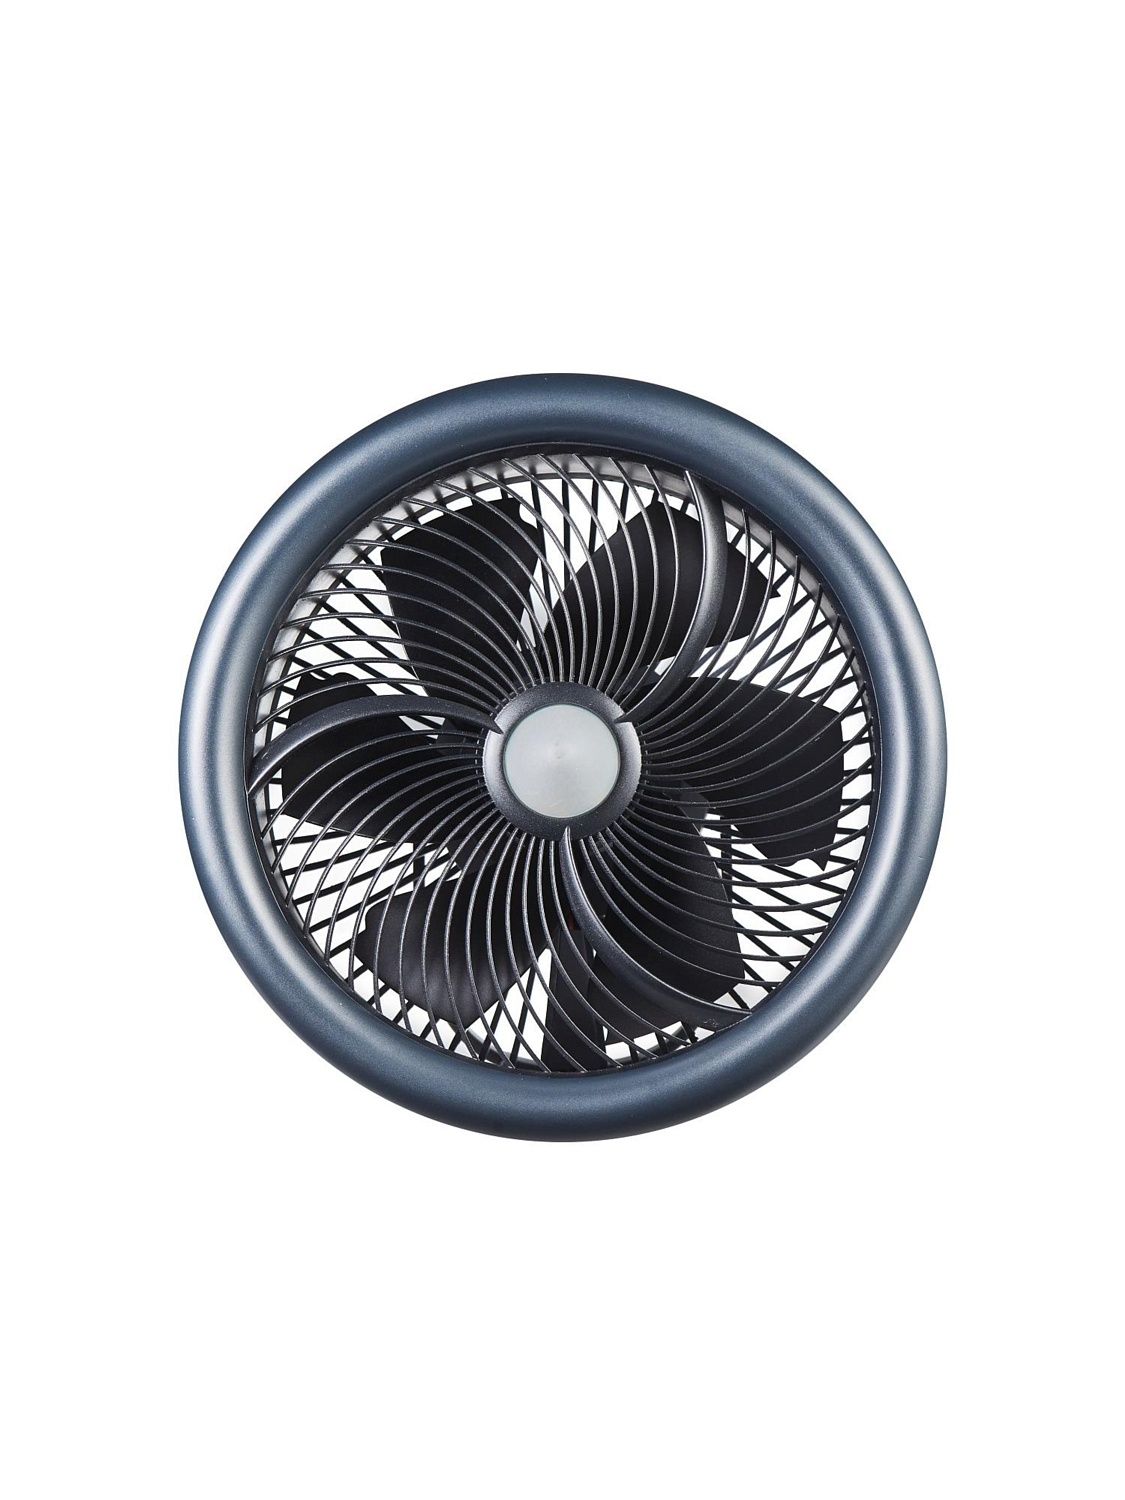 Вентилятор Flextail Max Cooler портативный 4 в 1 Grey